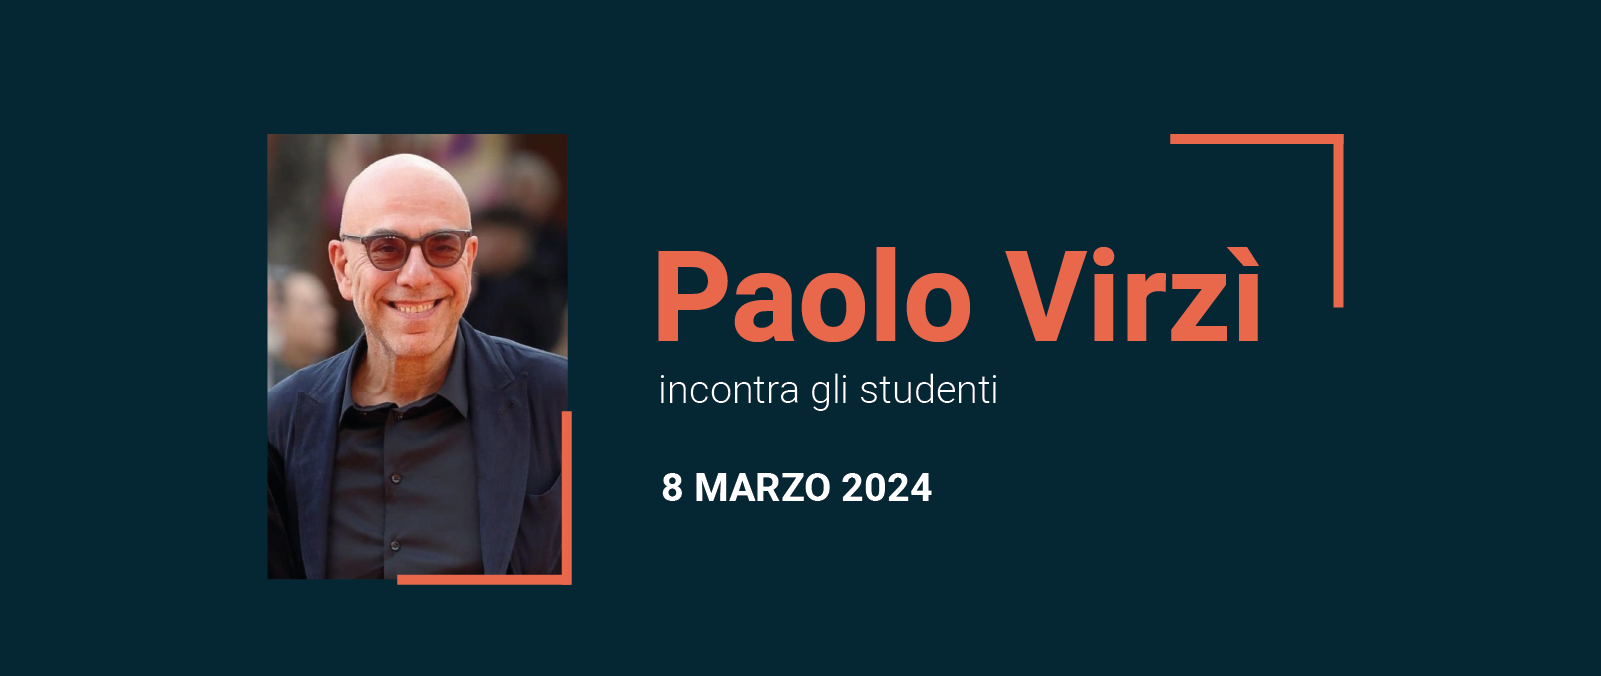 Paolo Virzì incontra gli studenti